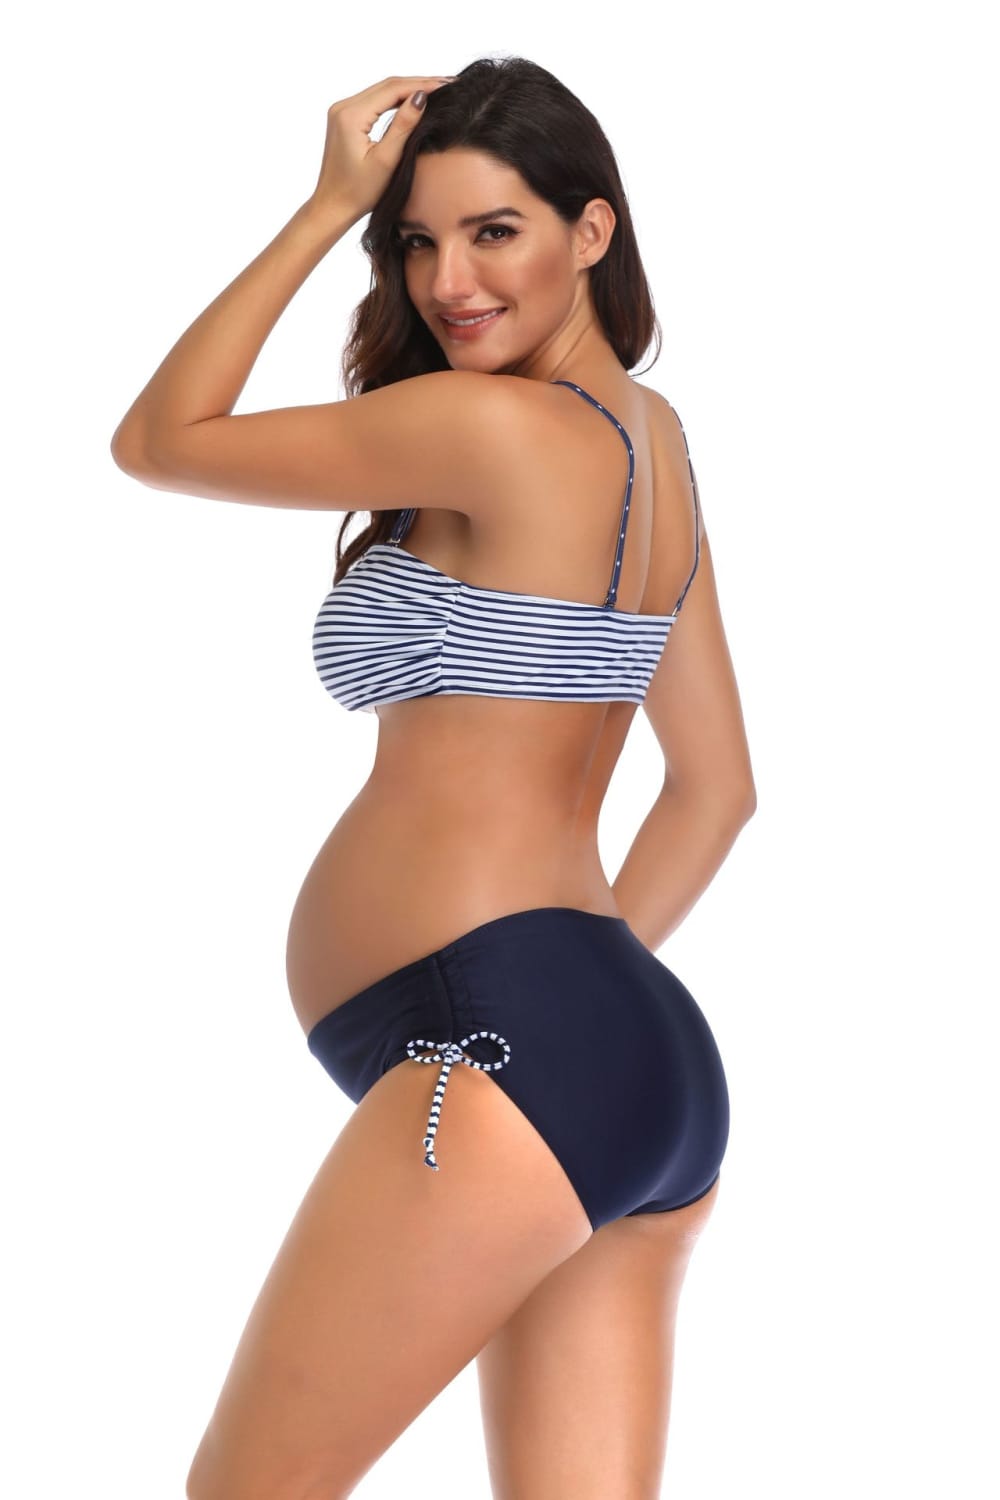 Lovemi - Pregnant women split swimsuit